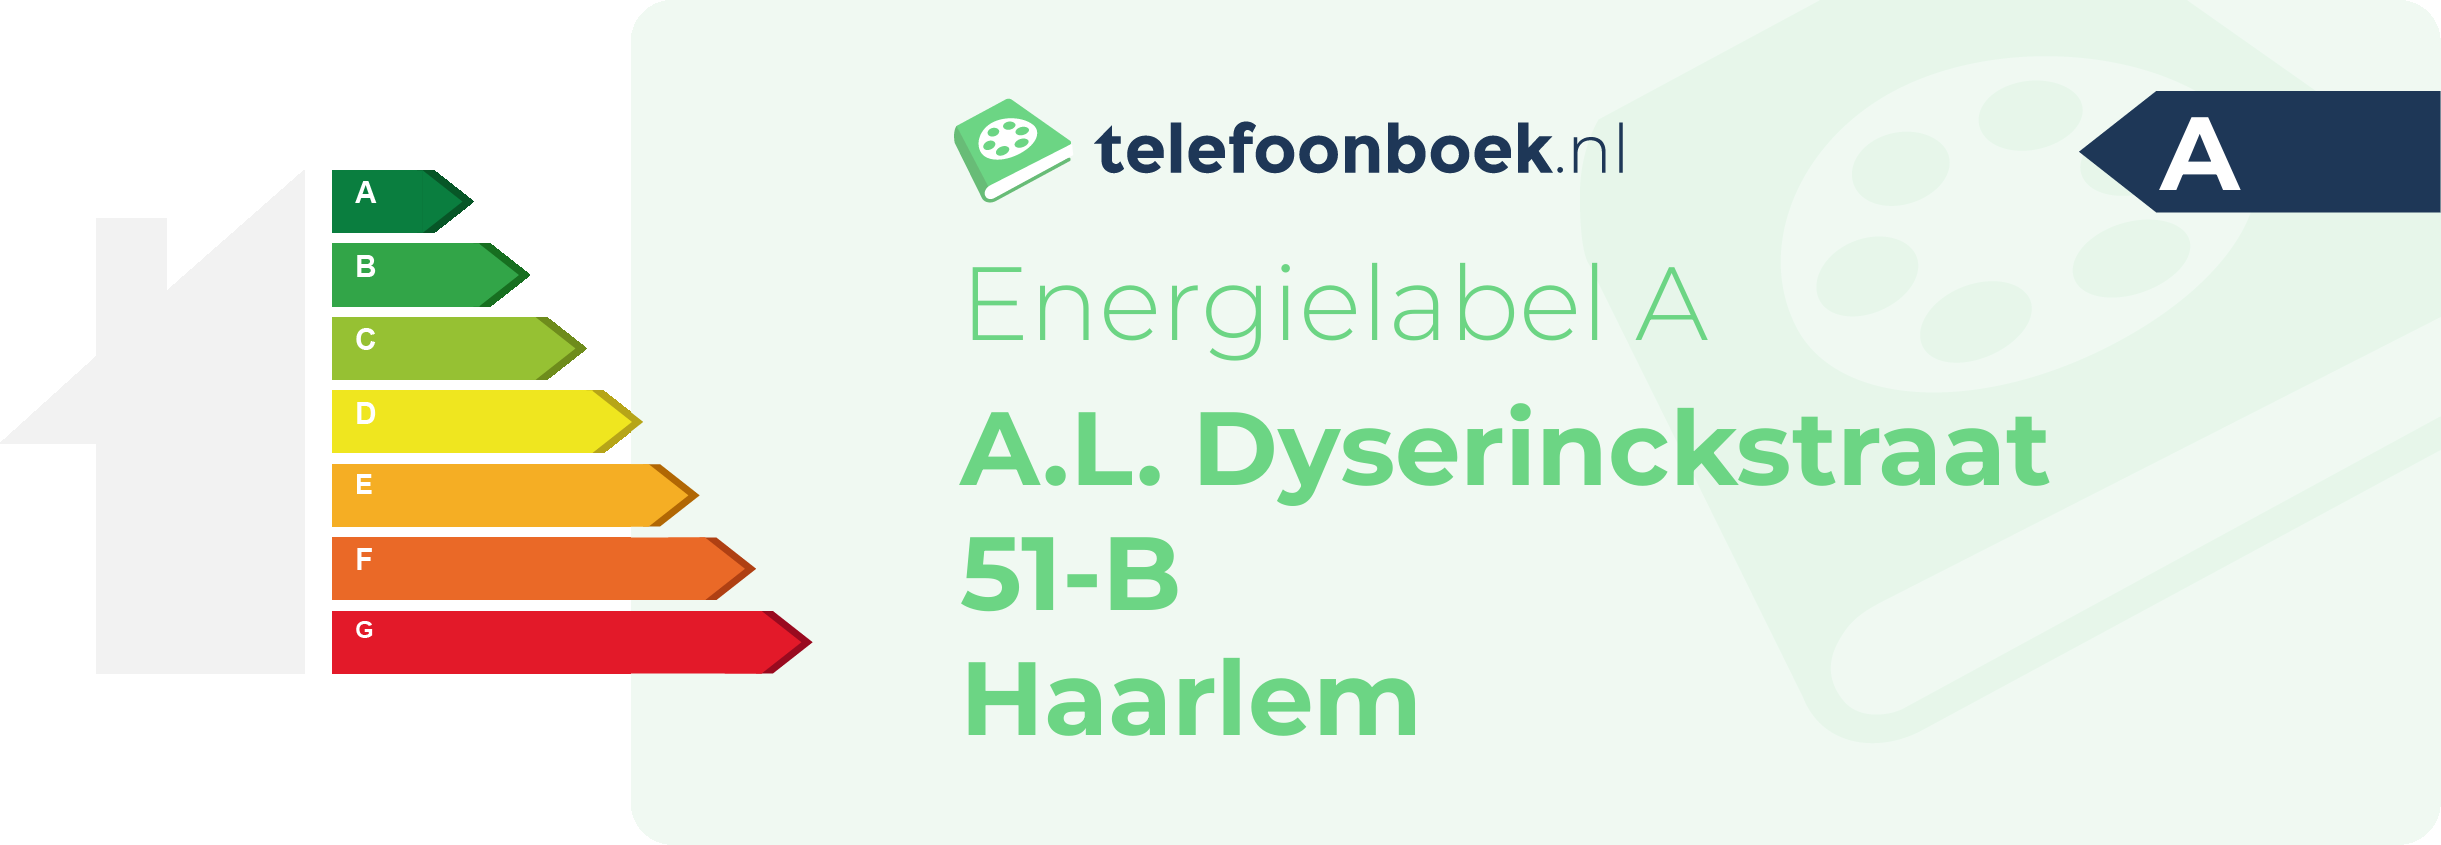 Energielabel A.L. Dyserinckstraat 51-B Haarlem